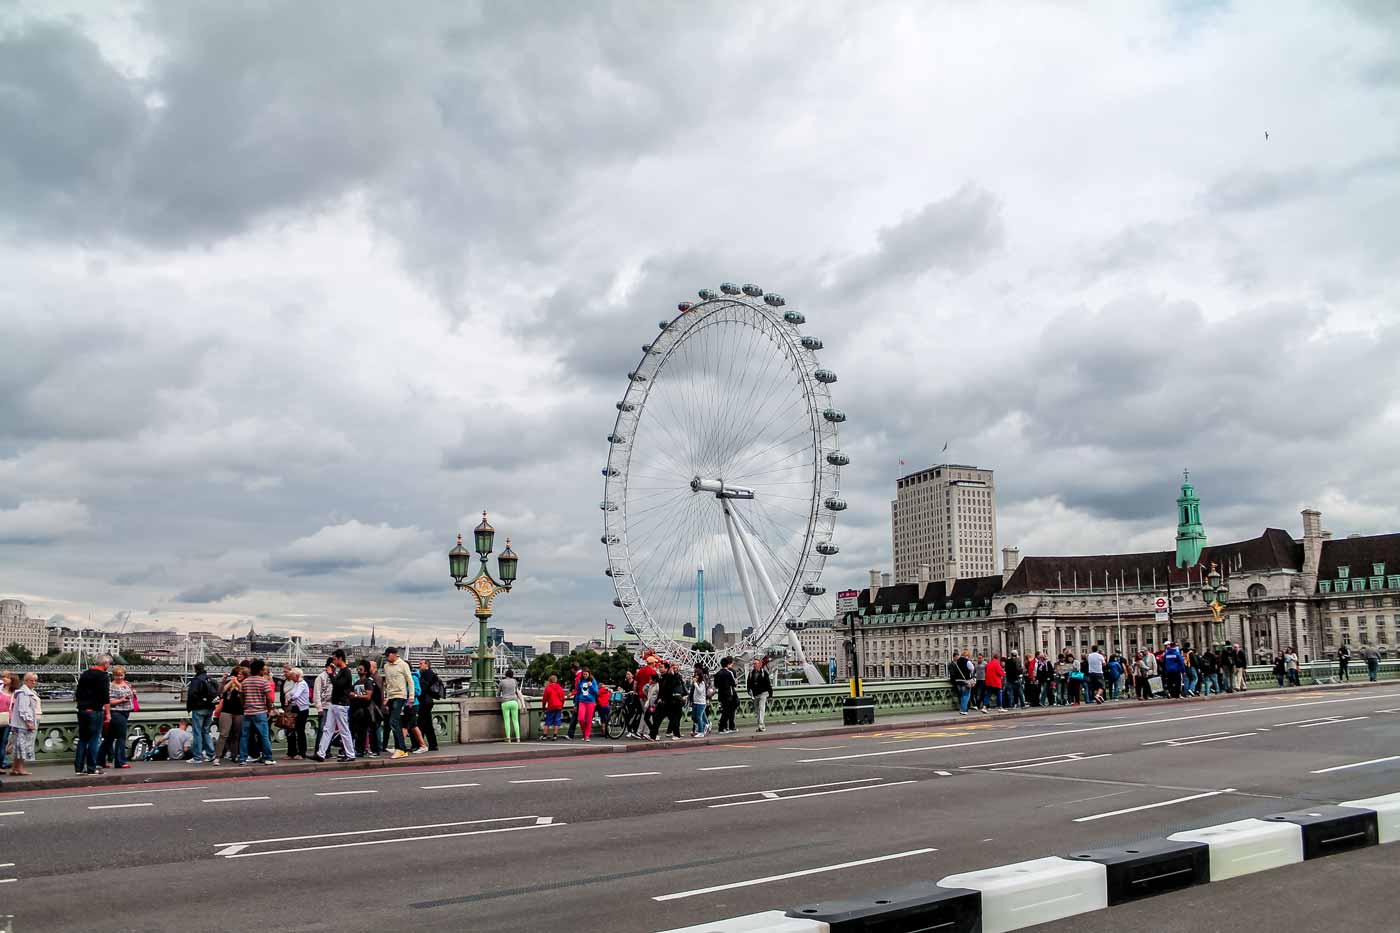 Roda gigante London Eye - Pontos turísticos de Londres